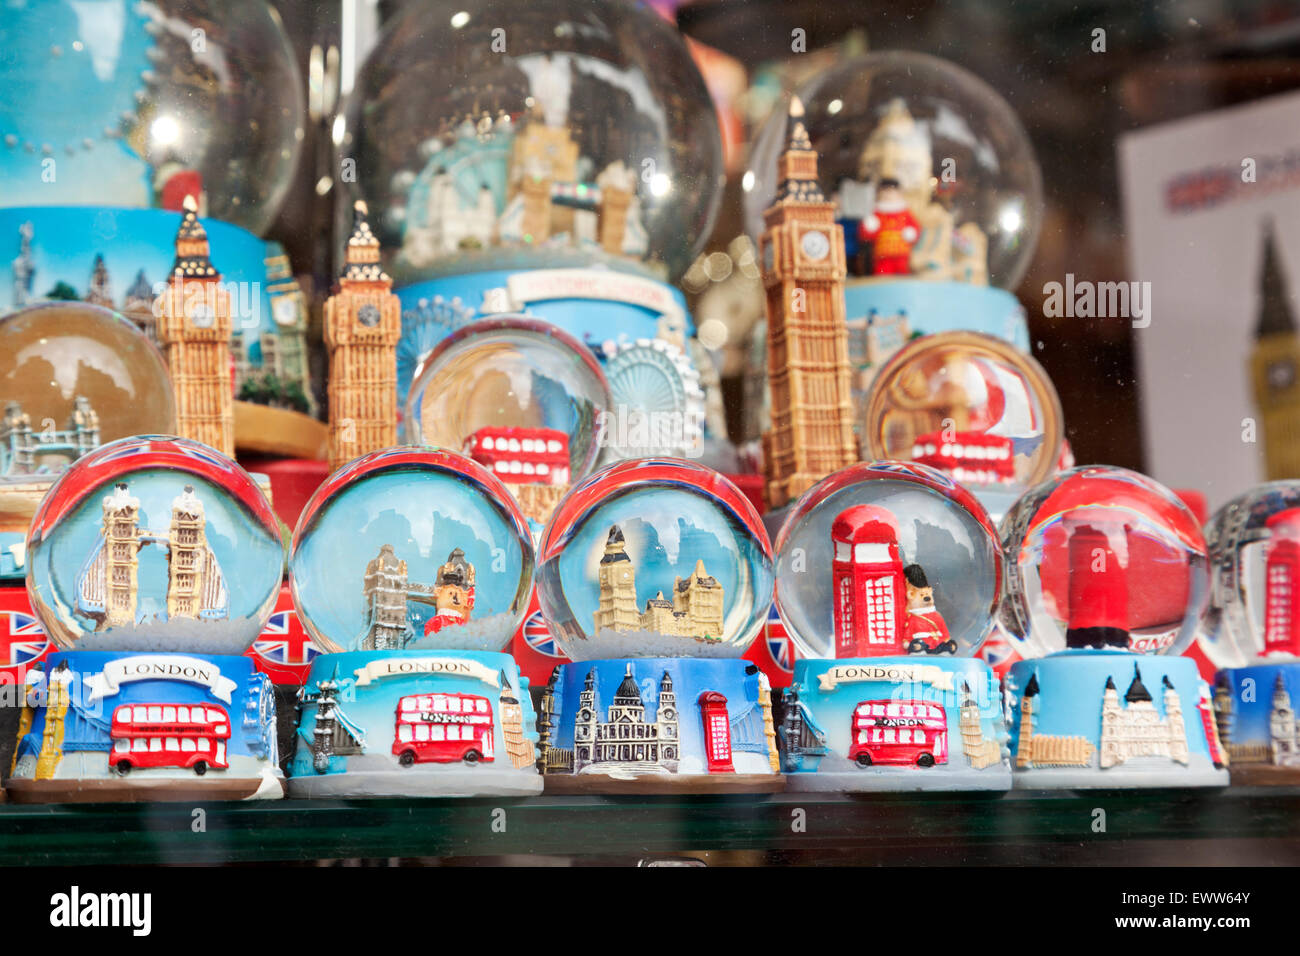 Londra a tema globi di neve presso un negozio di souvenirs Foto Stock